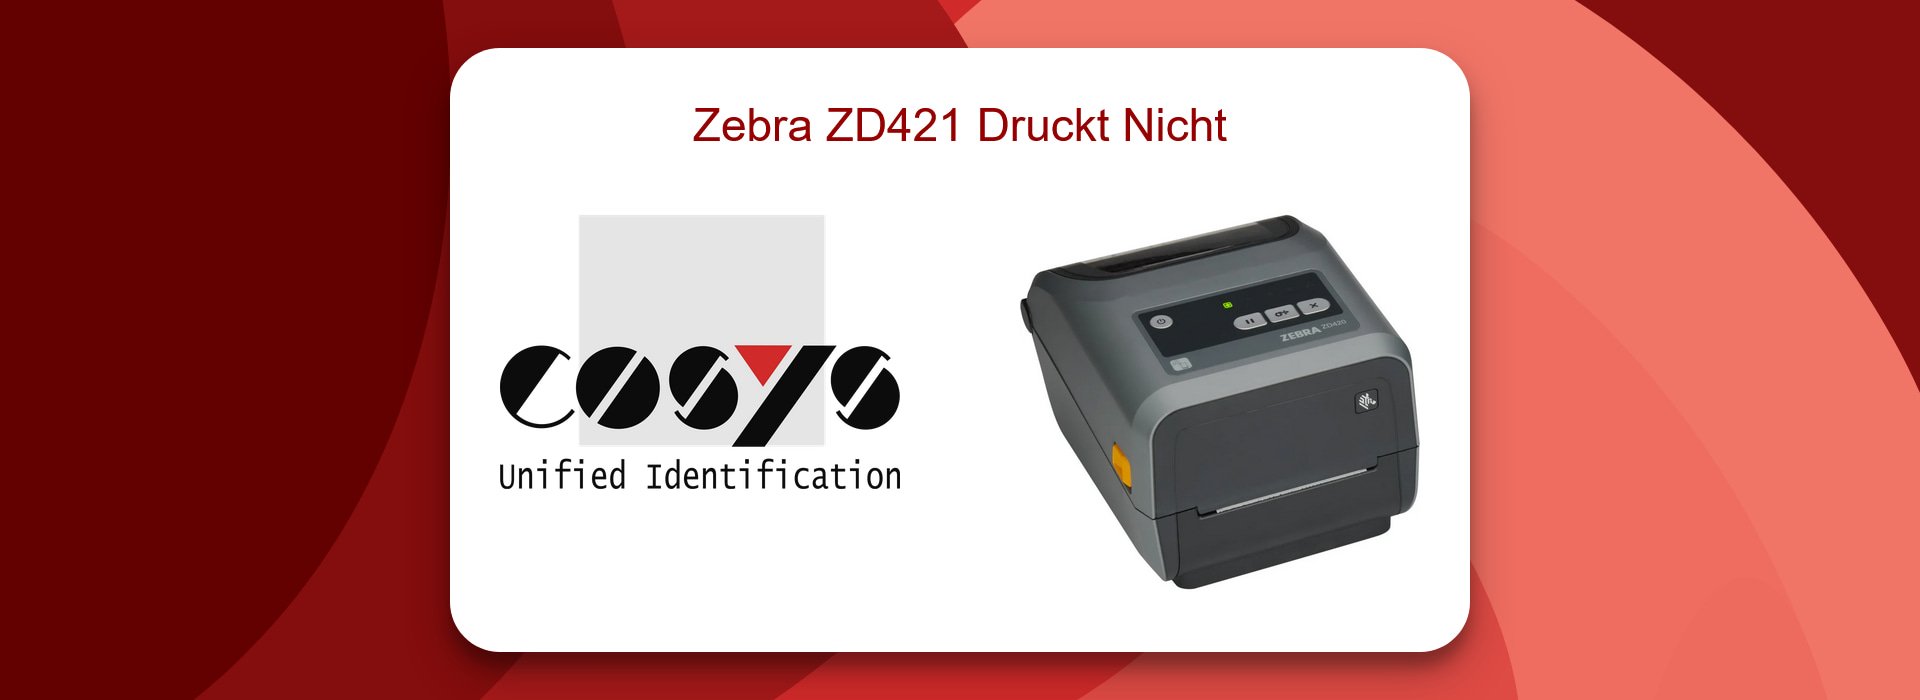 Zebra ZD421 Druckt Nicht – Schnelllösungen